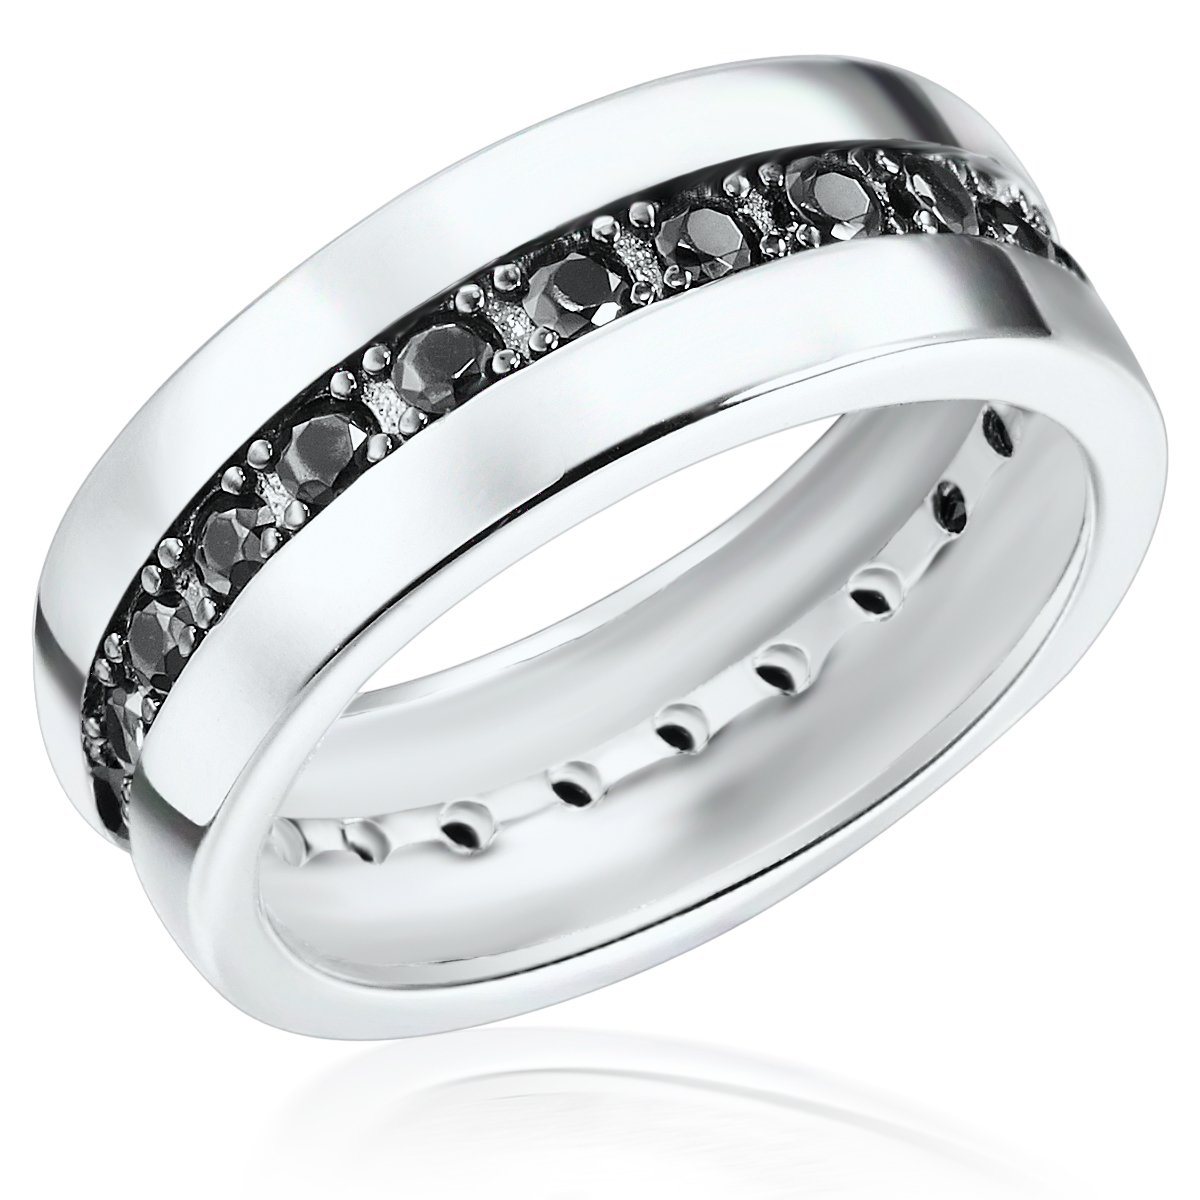 Rafaela Donata Damen-Ring 925 Sterling Silber Zirkonia schwarz - Moderner Silberring in Memoire-Form mit Steinen 60800107